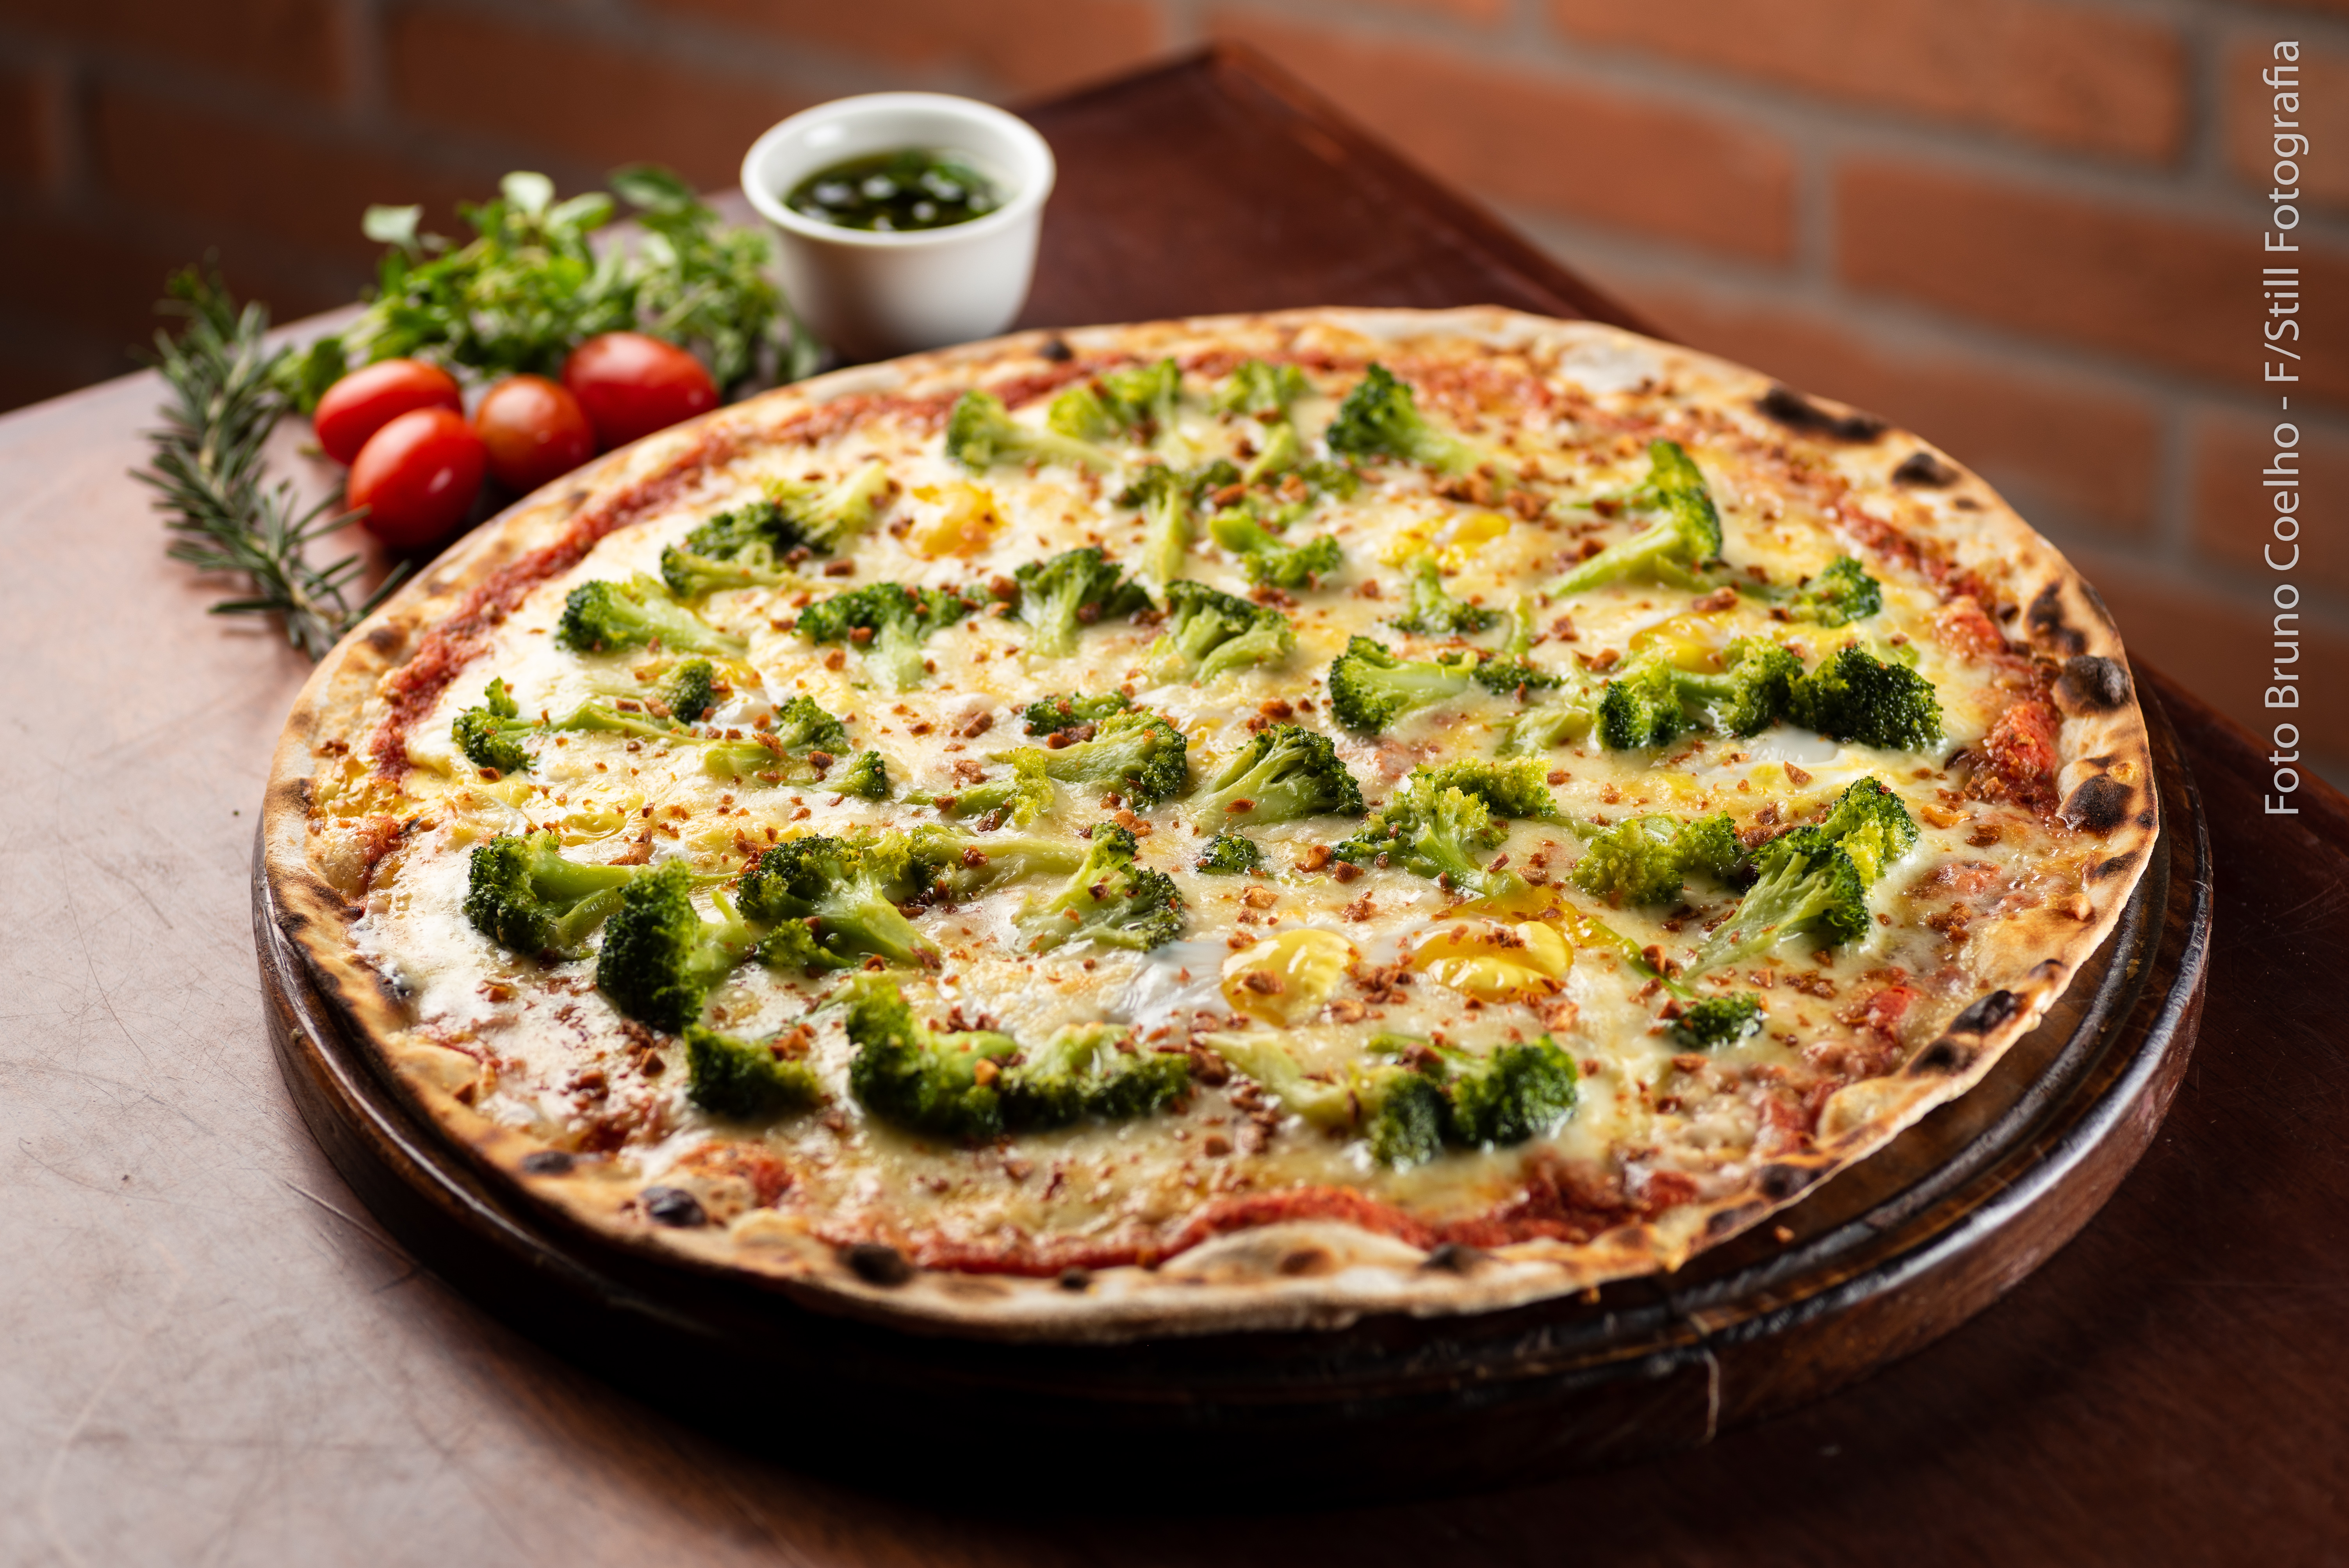 pizzaweek2019_figata_pizza_birra-2_pizza-do-chef